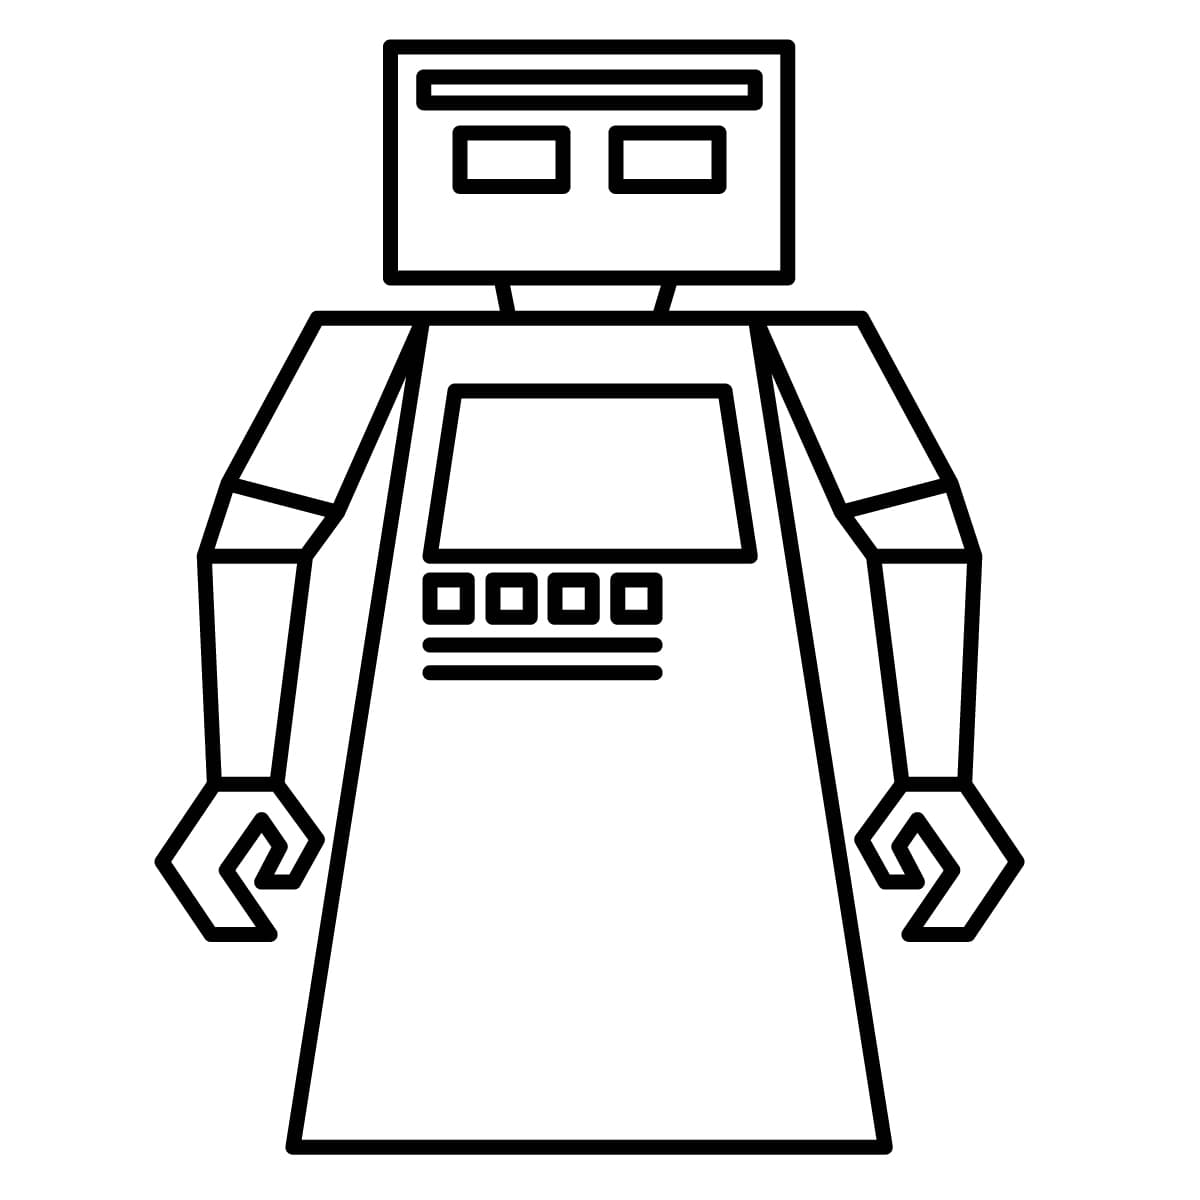 Cómo dibujar un Robot Paso a Paso  Dibujo de Robot  YouTube